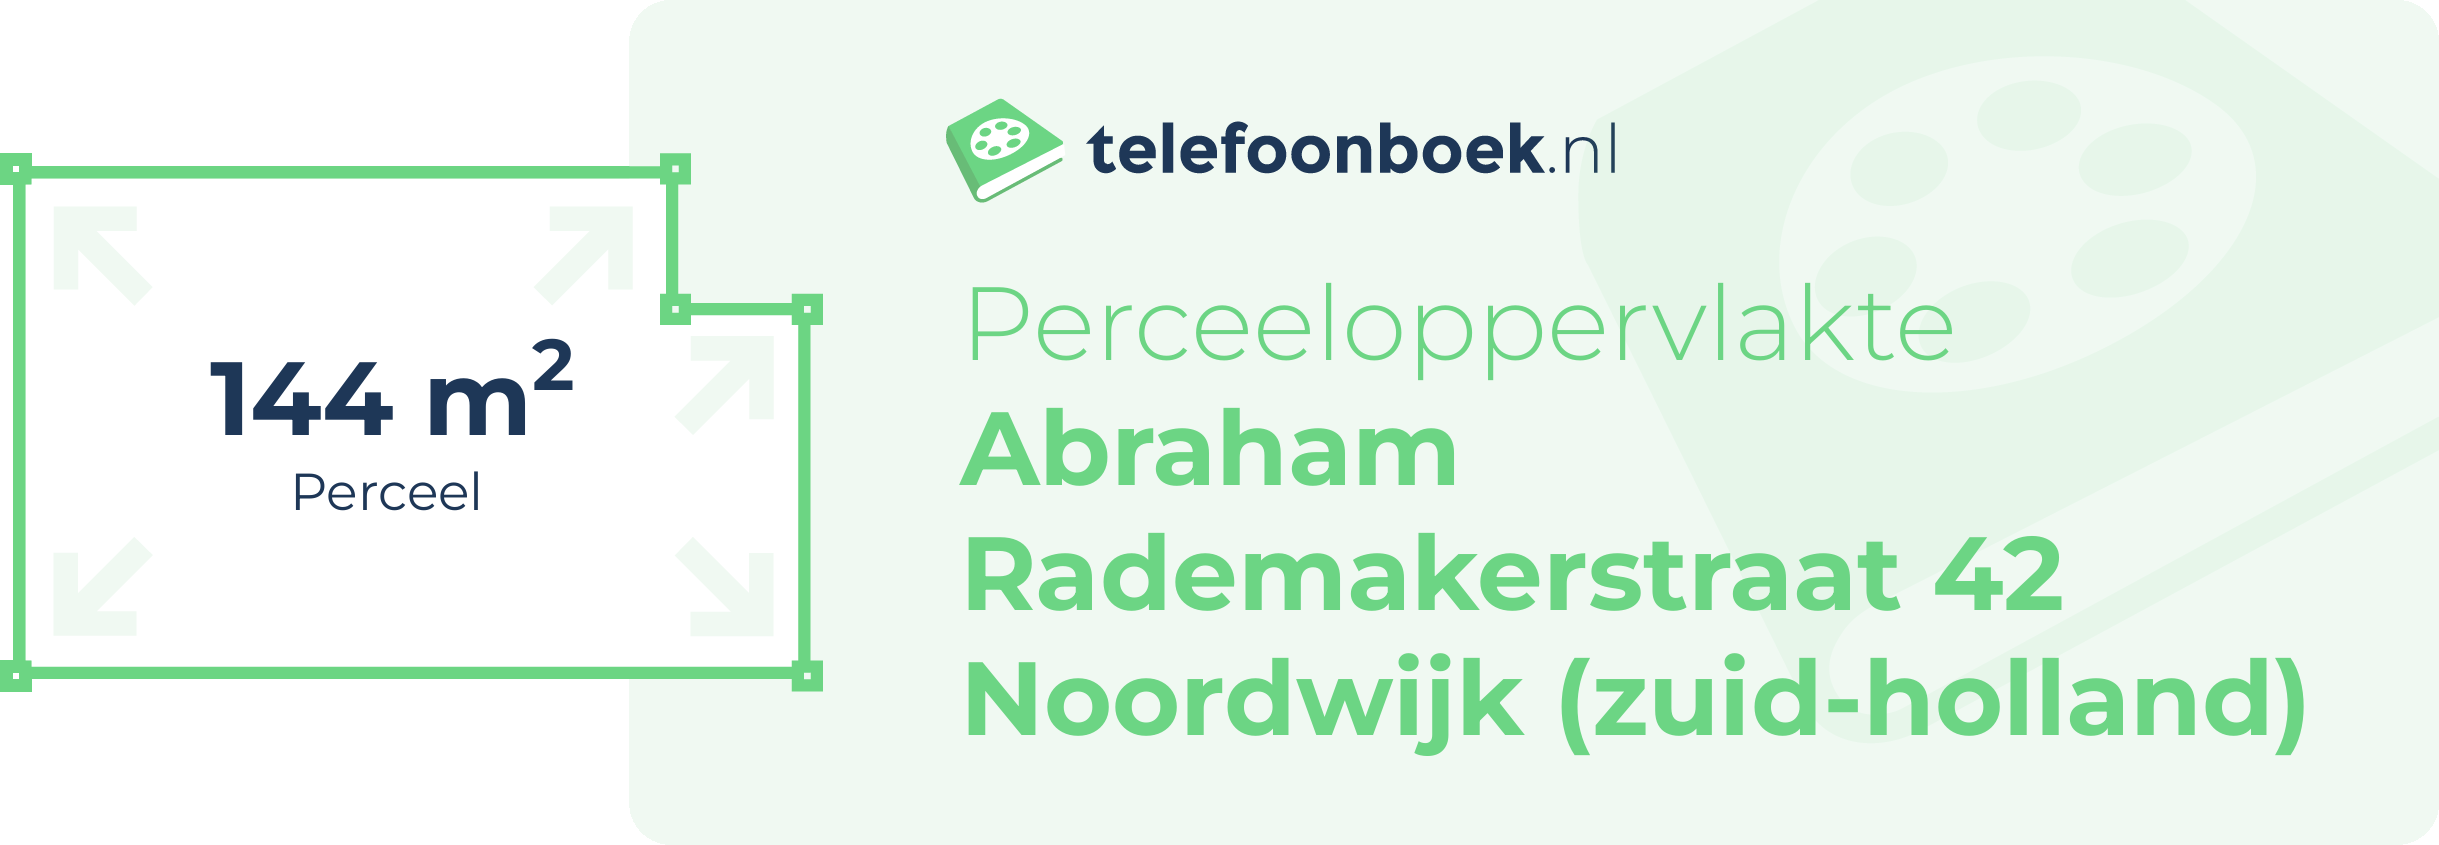 Perceeloppervlakte Abraham Rademakerstraat 42 Noordwijk (Zuid-Holland)